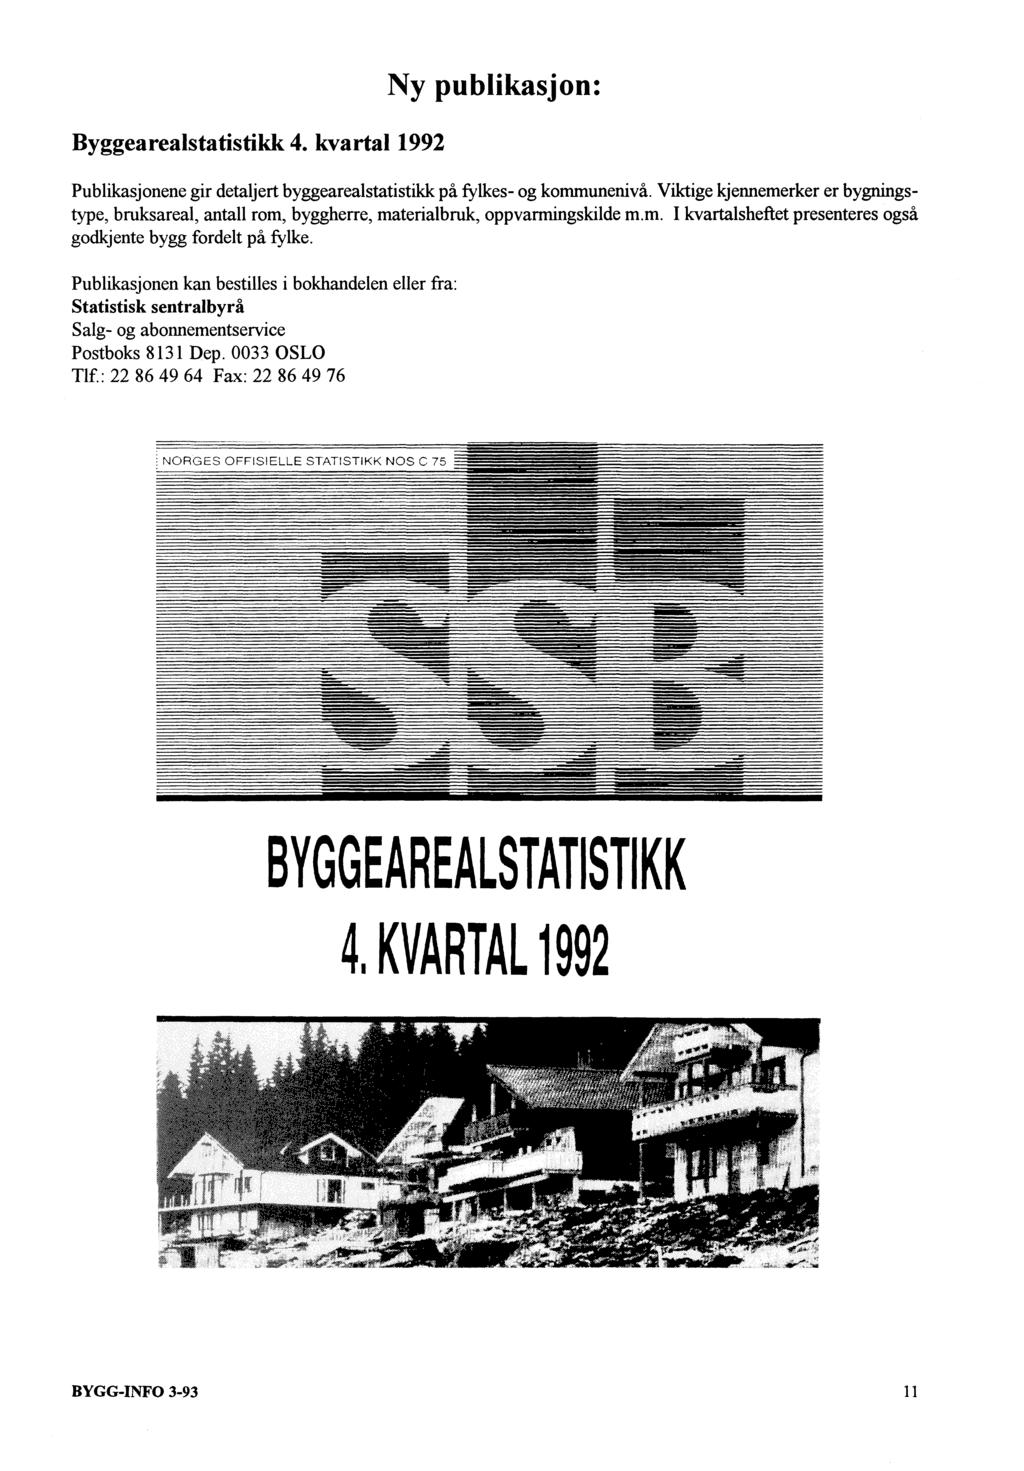 Byggearealstatistikk 4. kvartal 1992 Ny publikasjon: Publikasjonene gir detaljert byggearealstatistikk på fylkes- og kommunenivå.